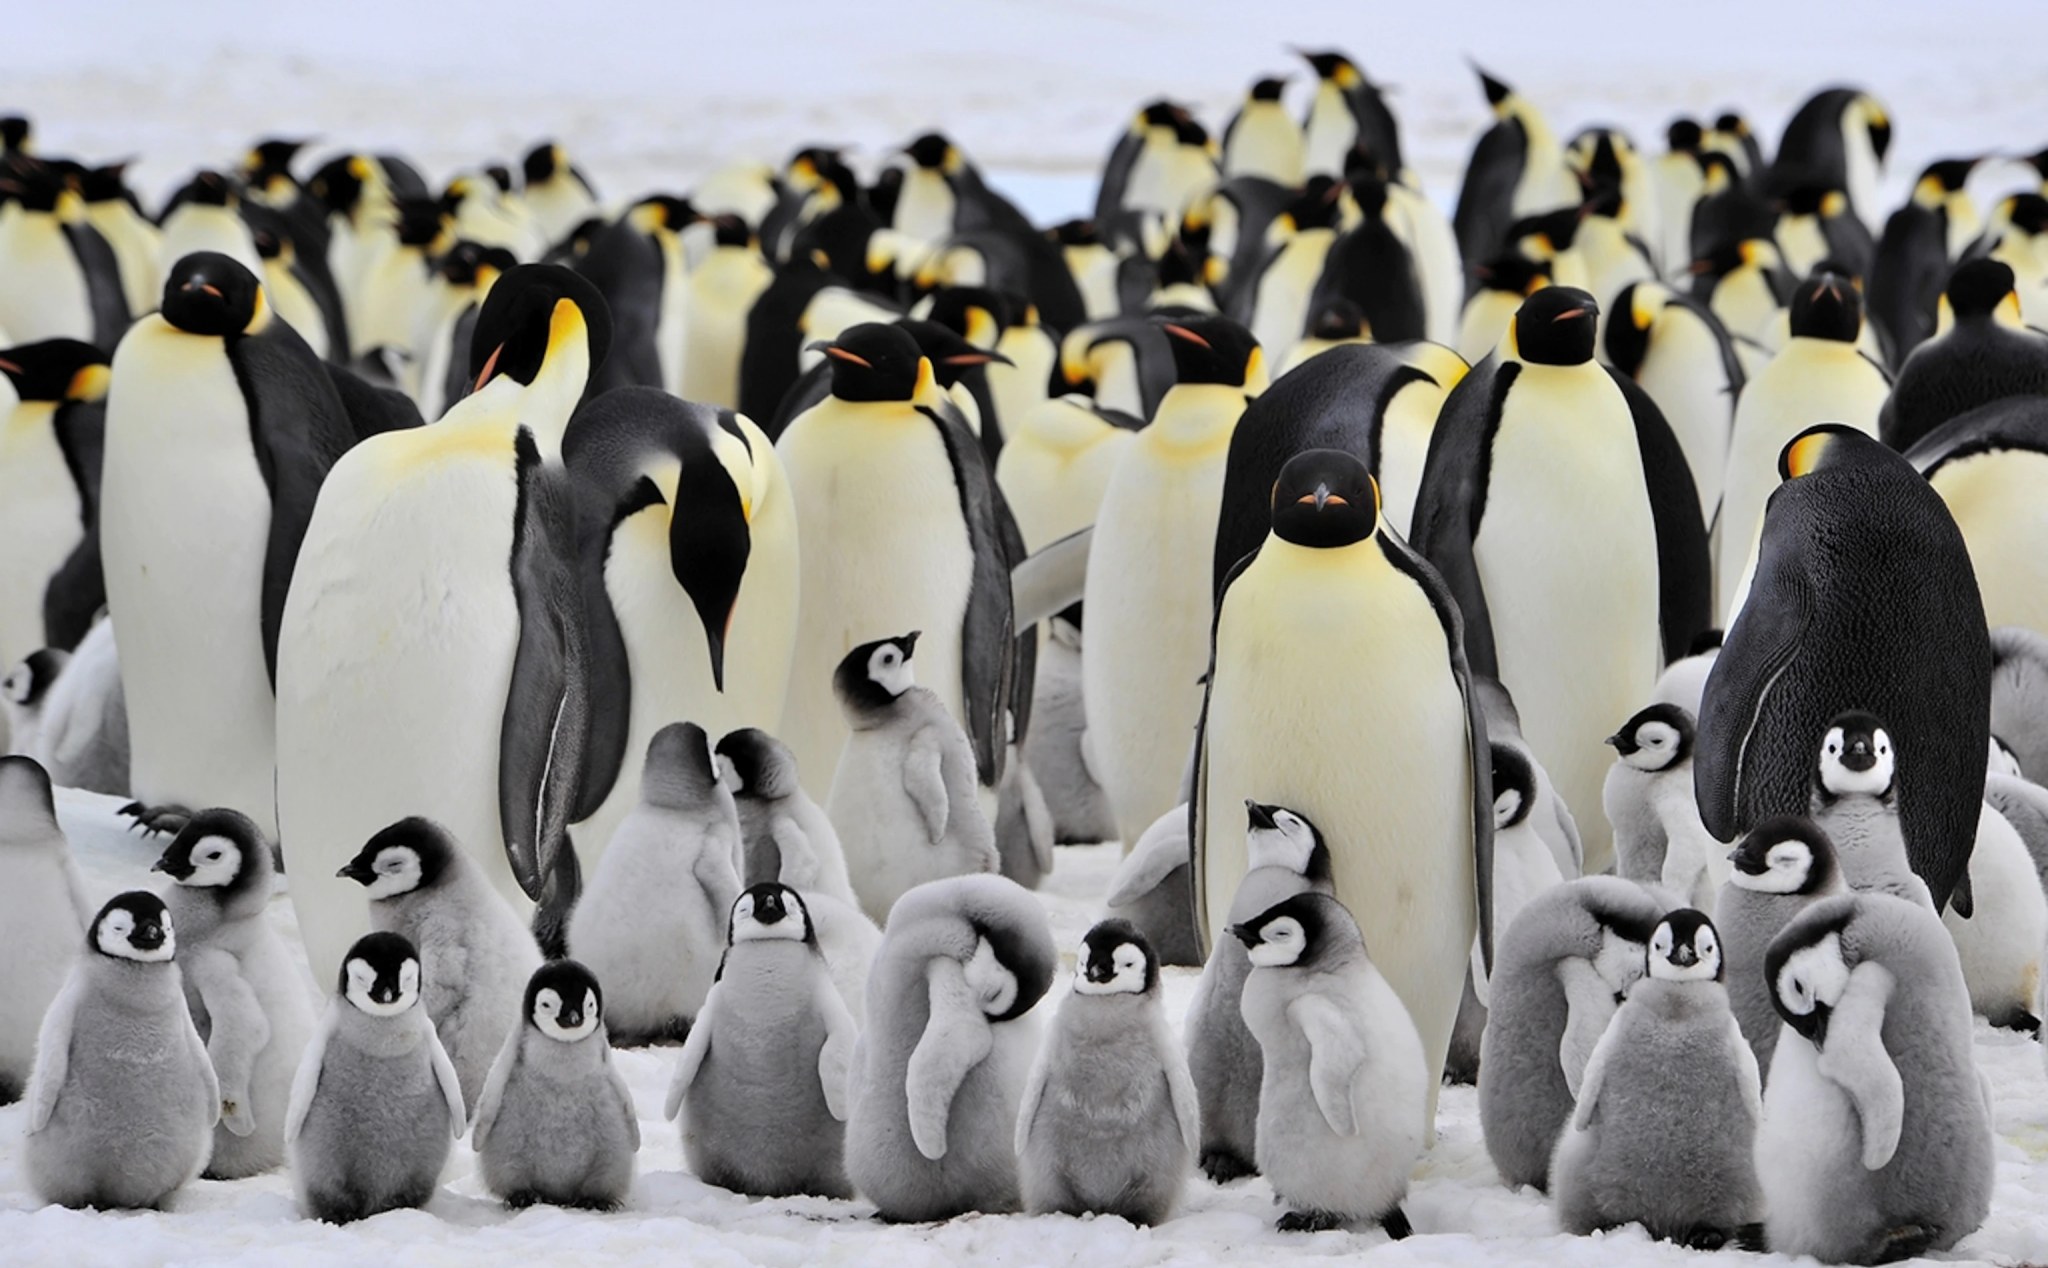 Rất có thể chỉ vài chục năm nữa loài chim cánh cụt hoàng đế sẽ tuyệt chủng